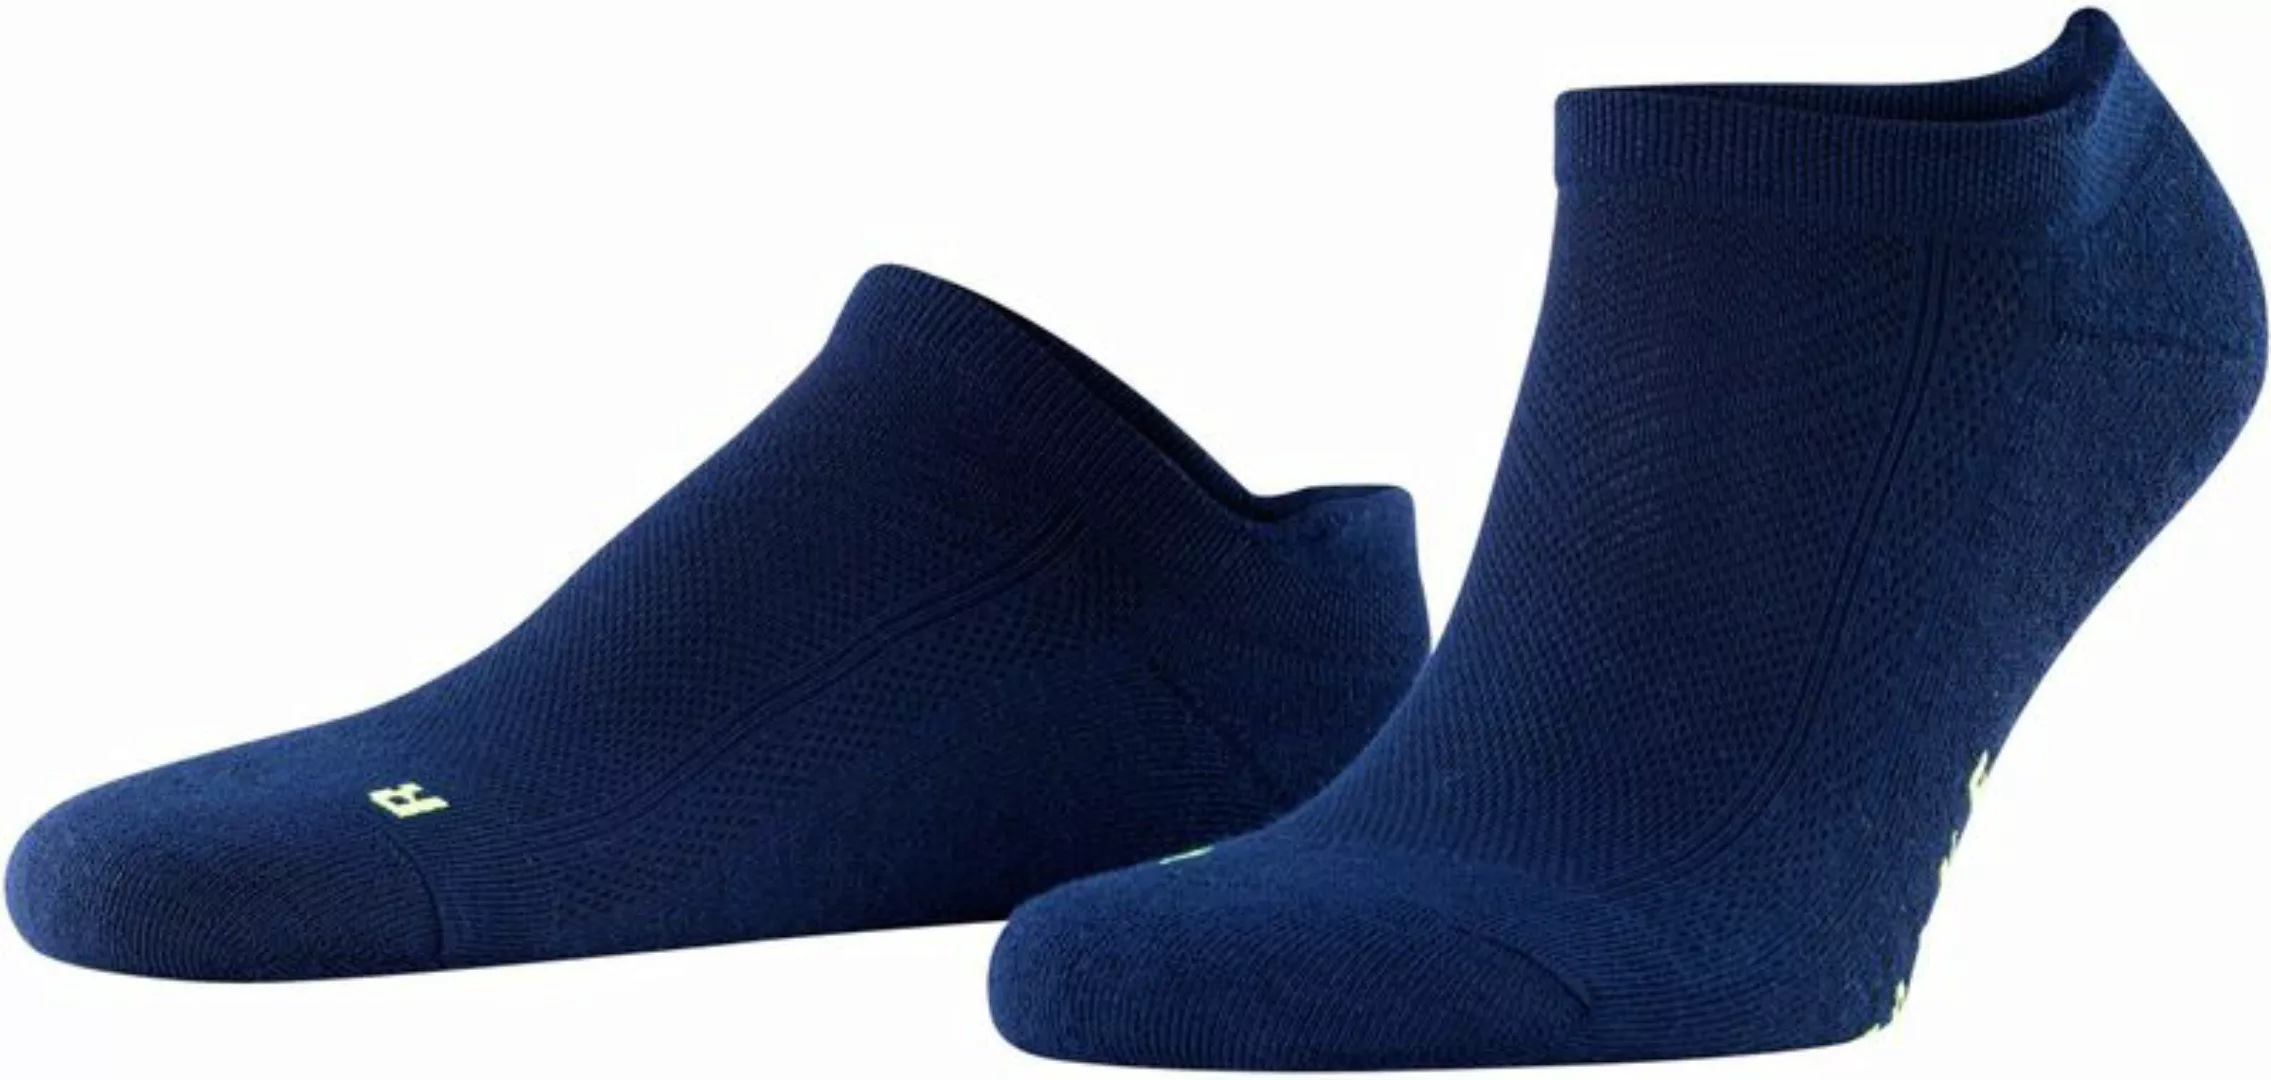 FALKE Cool Kick Trainer Socken Navy - Größe 44-45 günstig online kaufen